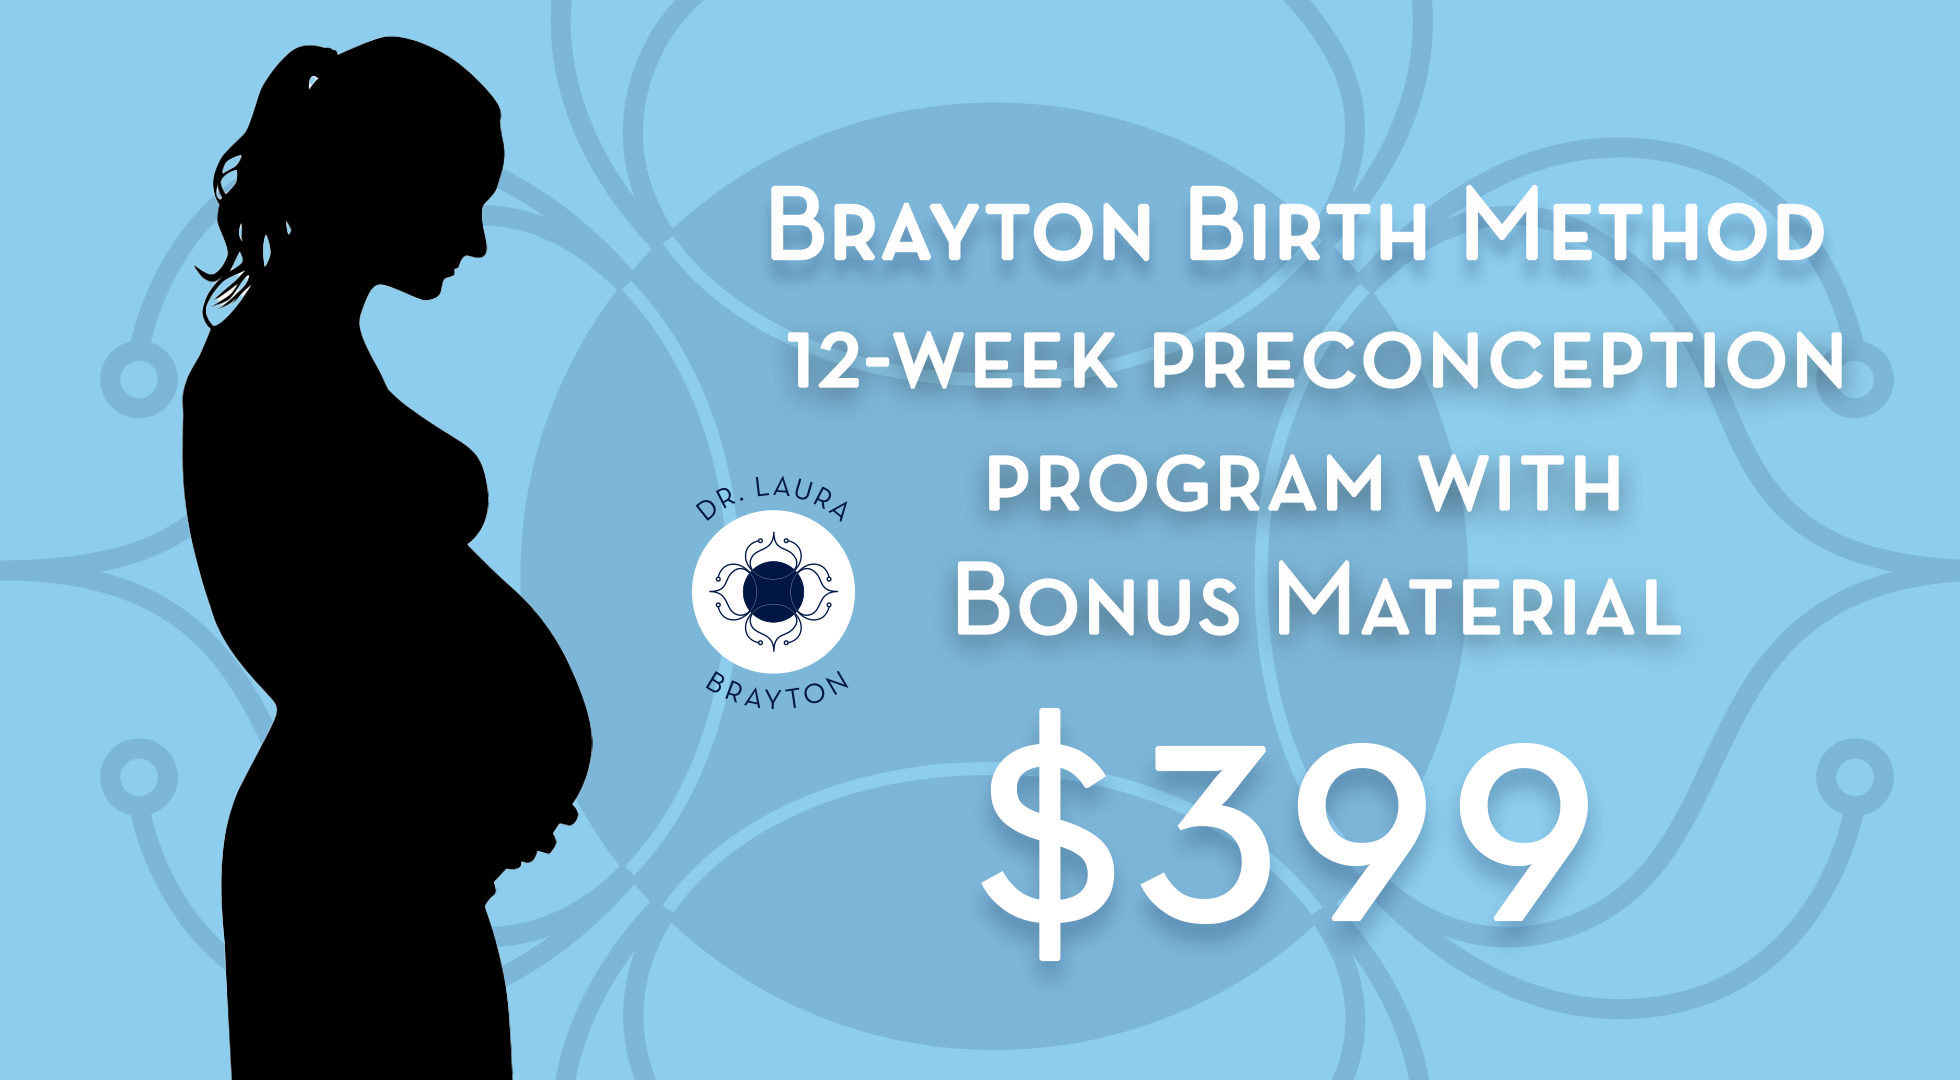 The Brayton Birth Method